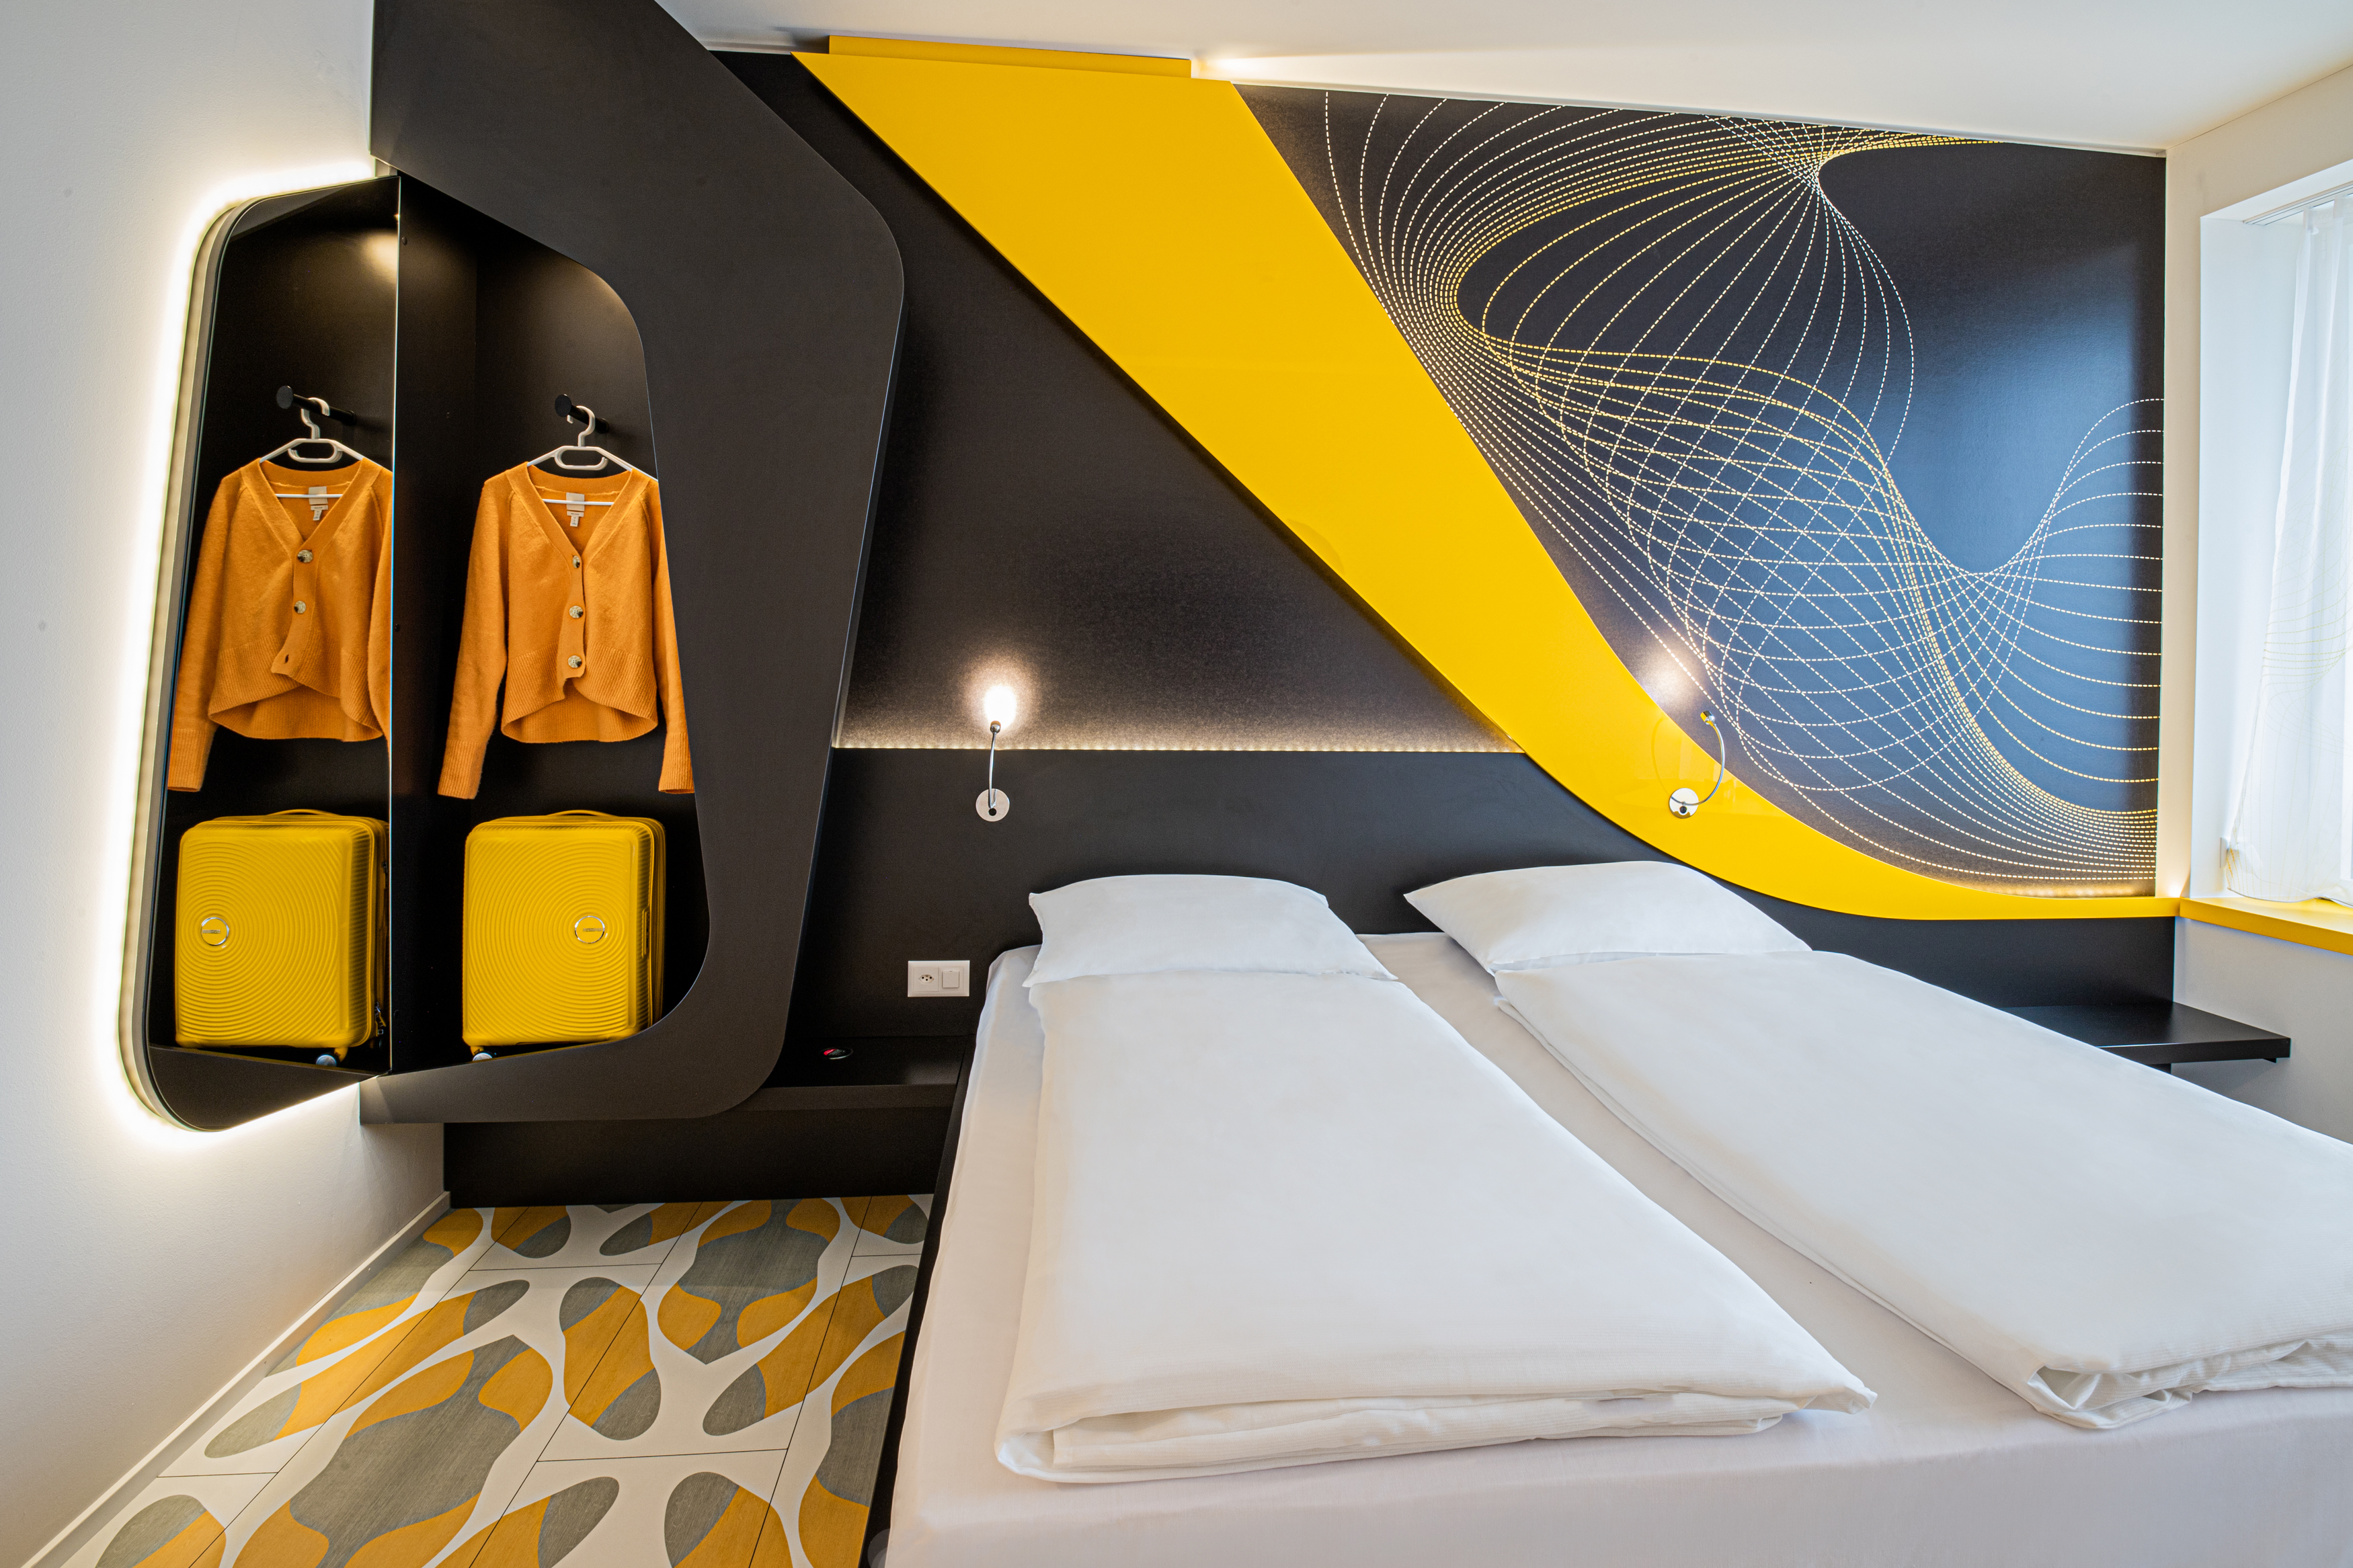 Stilvolles Doppelzimmer mit gelb-schwarzem Design und Kofferablage